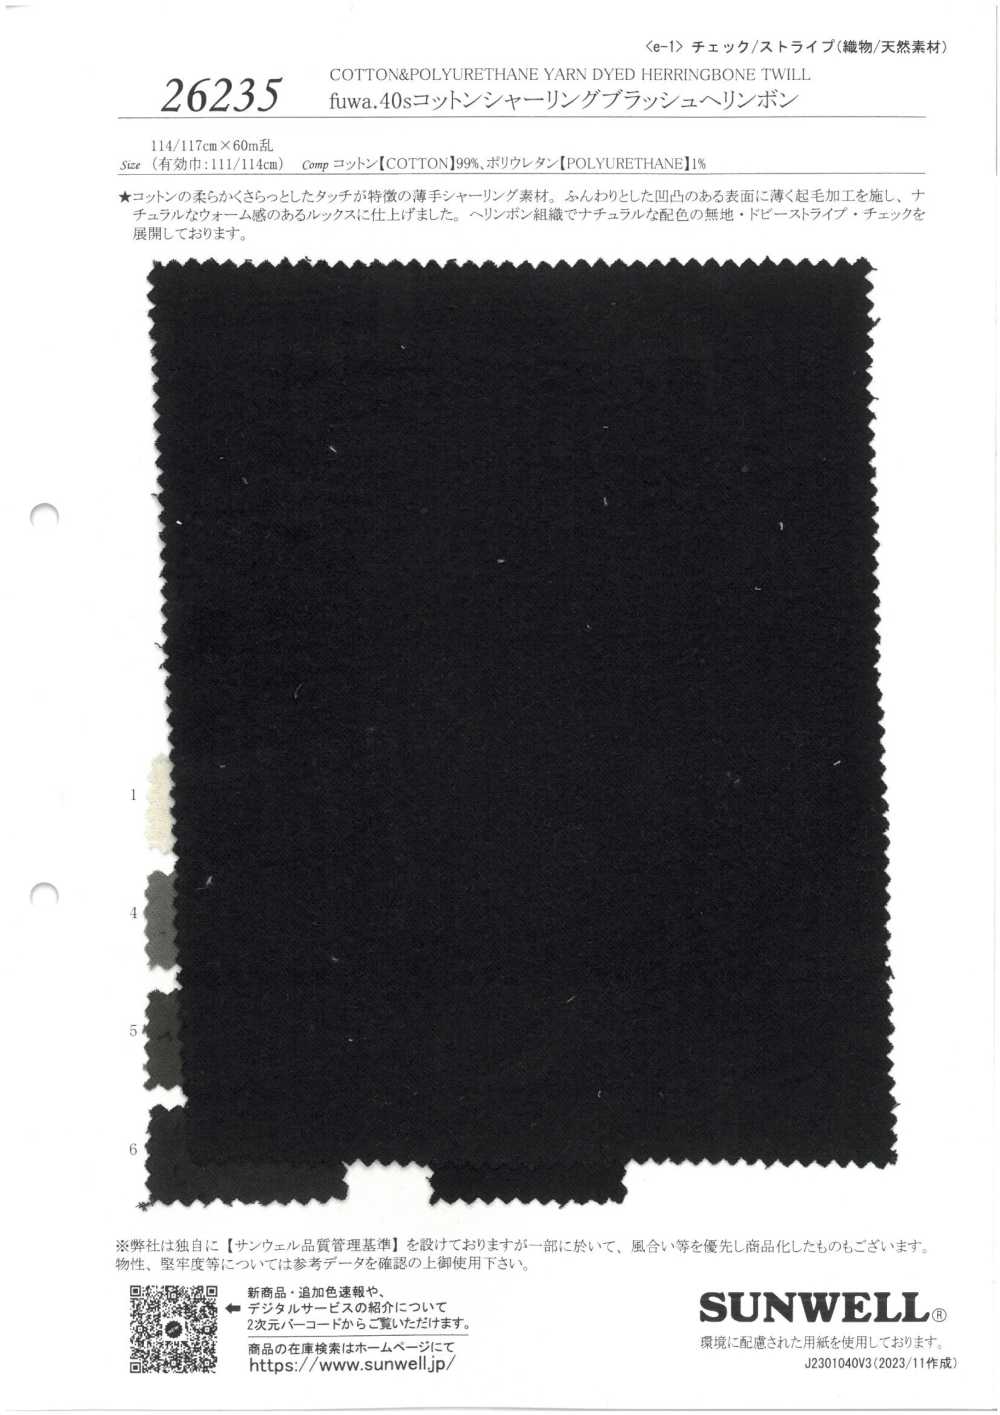 26235 Fuwa.40 Shirring De Algodão De Fio único Espinha De Peixe Escovado[Têxtil / Tecido] SUNWELL